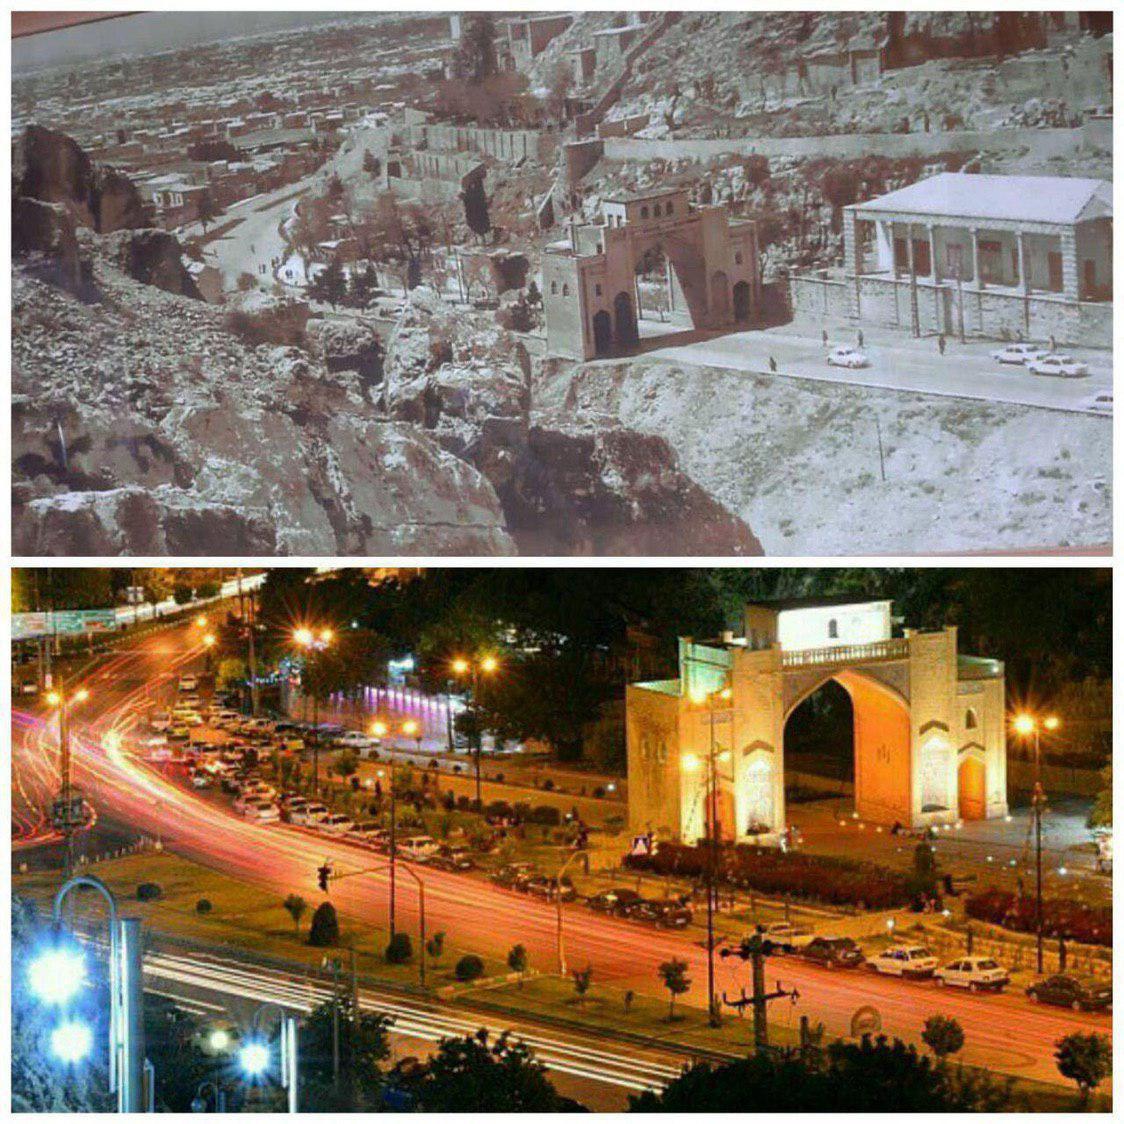 تصویر بالا دروازه شیراز در دهه ۶۰ است و تصویر پایین دروازه شیراز کنونی